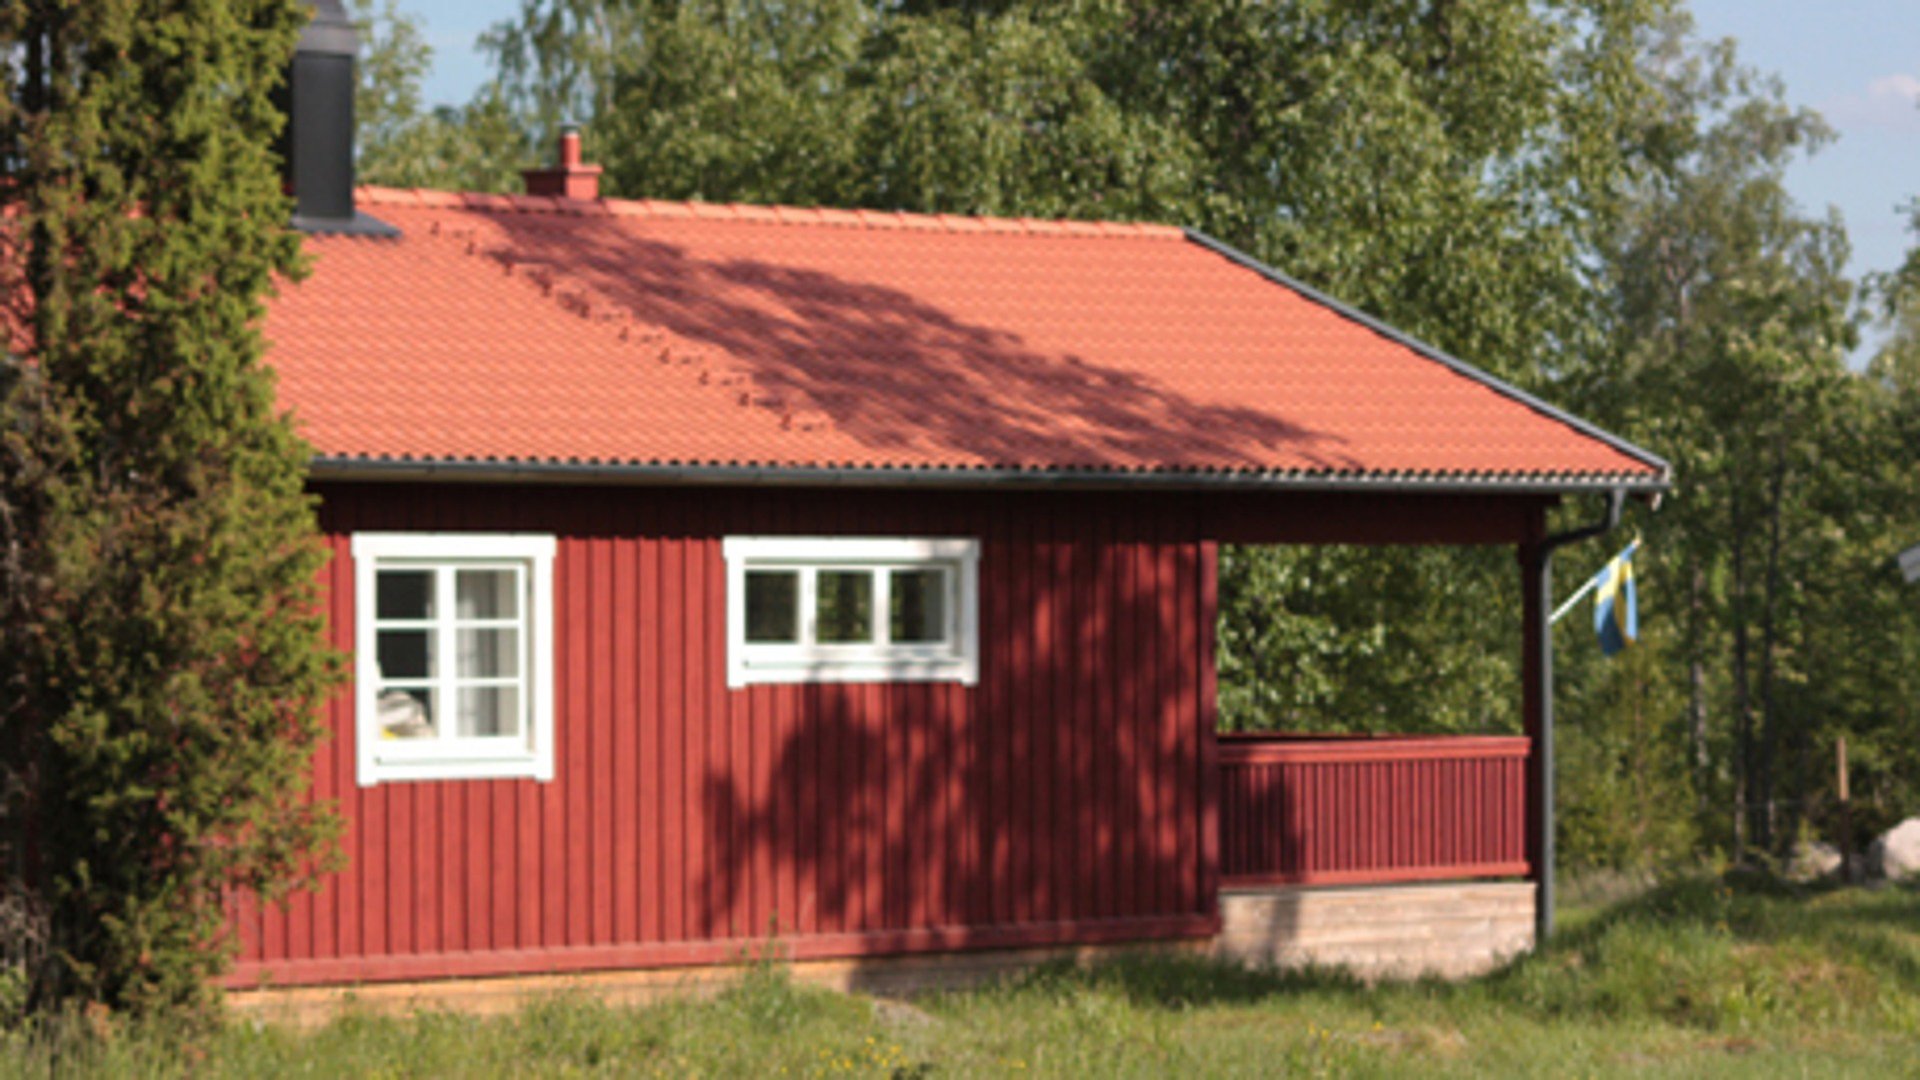 Sidovy av en röd stuga i trä. Till vänster står en enbuske. Stugan har två fönster på långsidan och en veranda med tak på ena kortsidan. Vid verandan händer en svensk flagga. Bakom stugan finns en skog. 